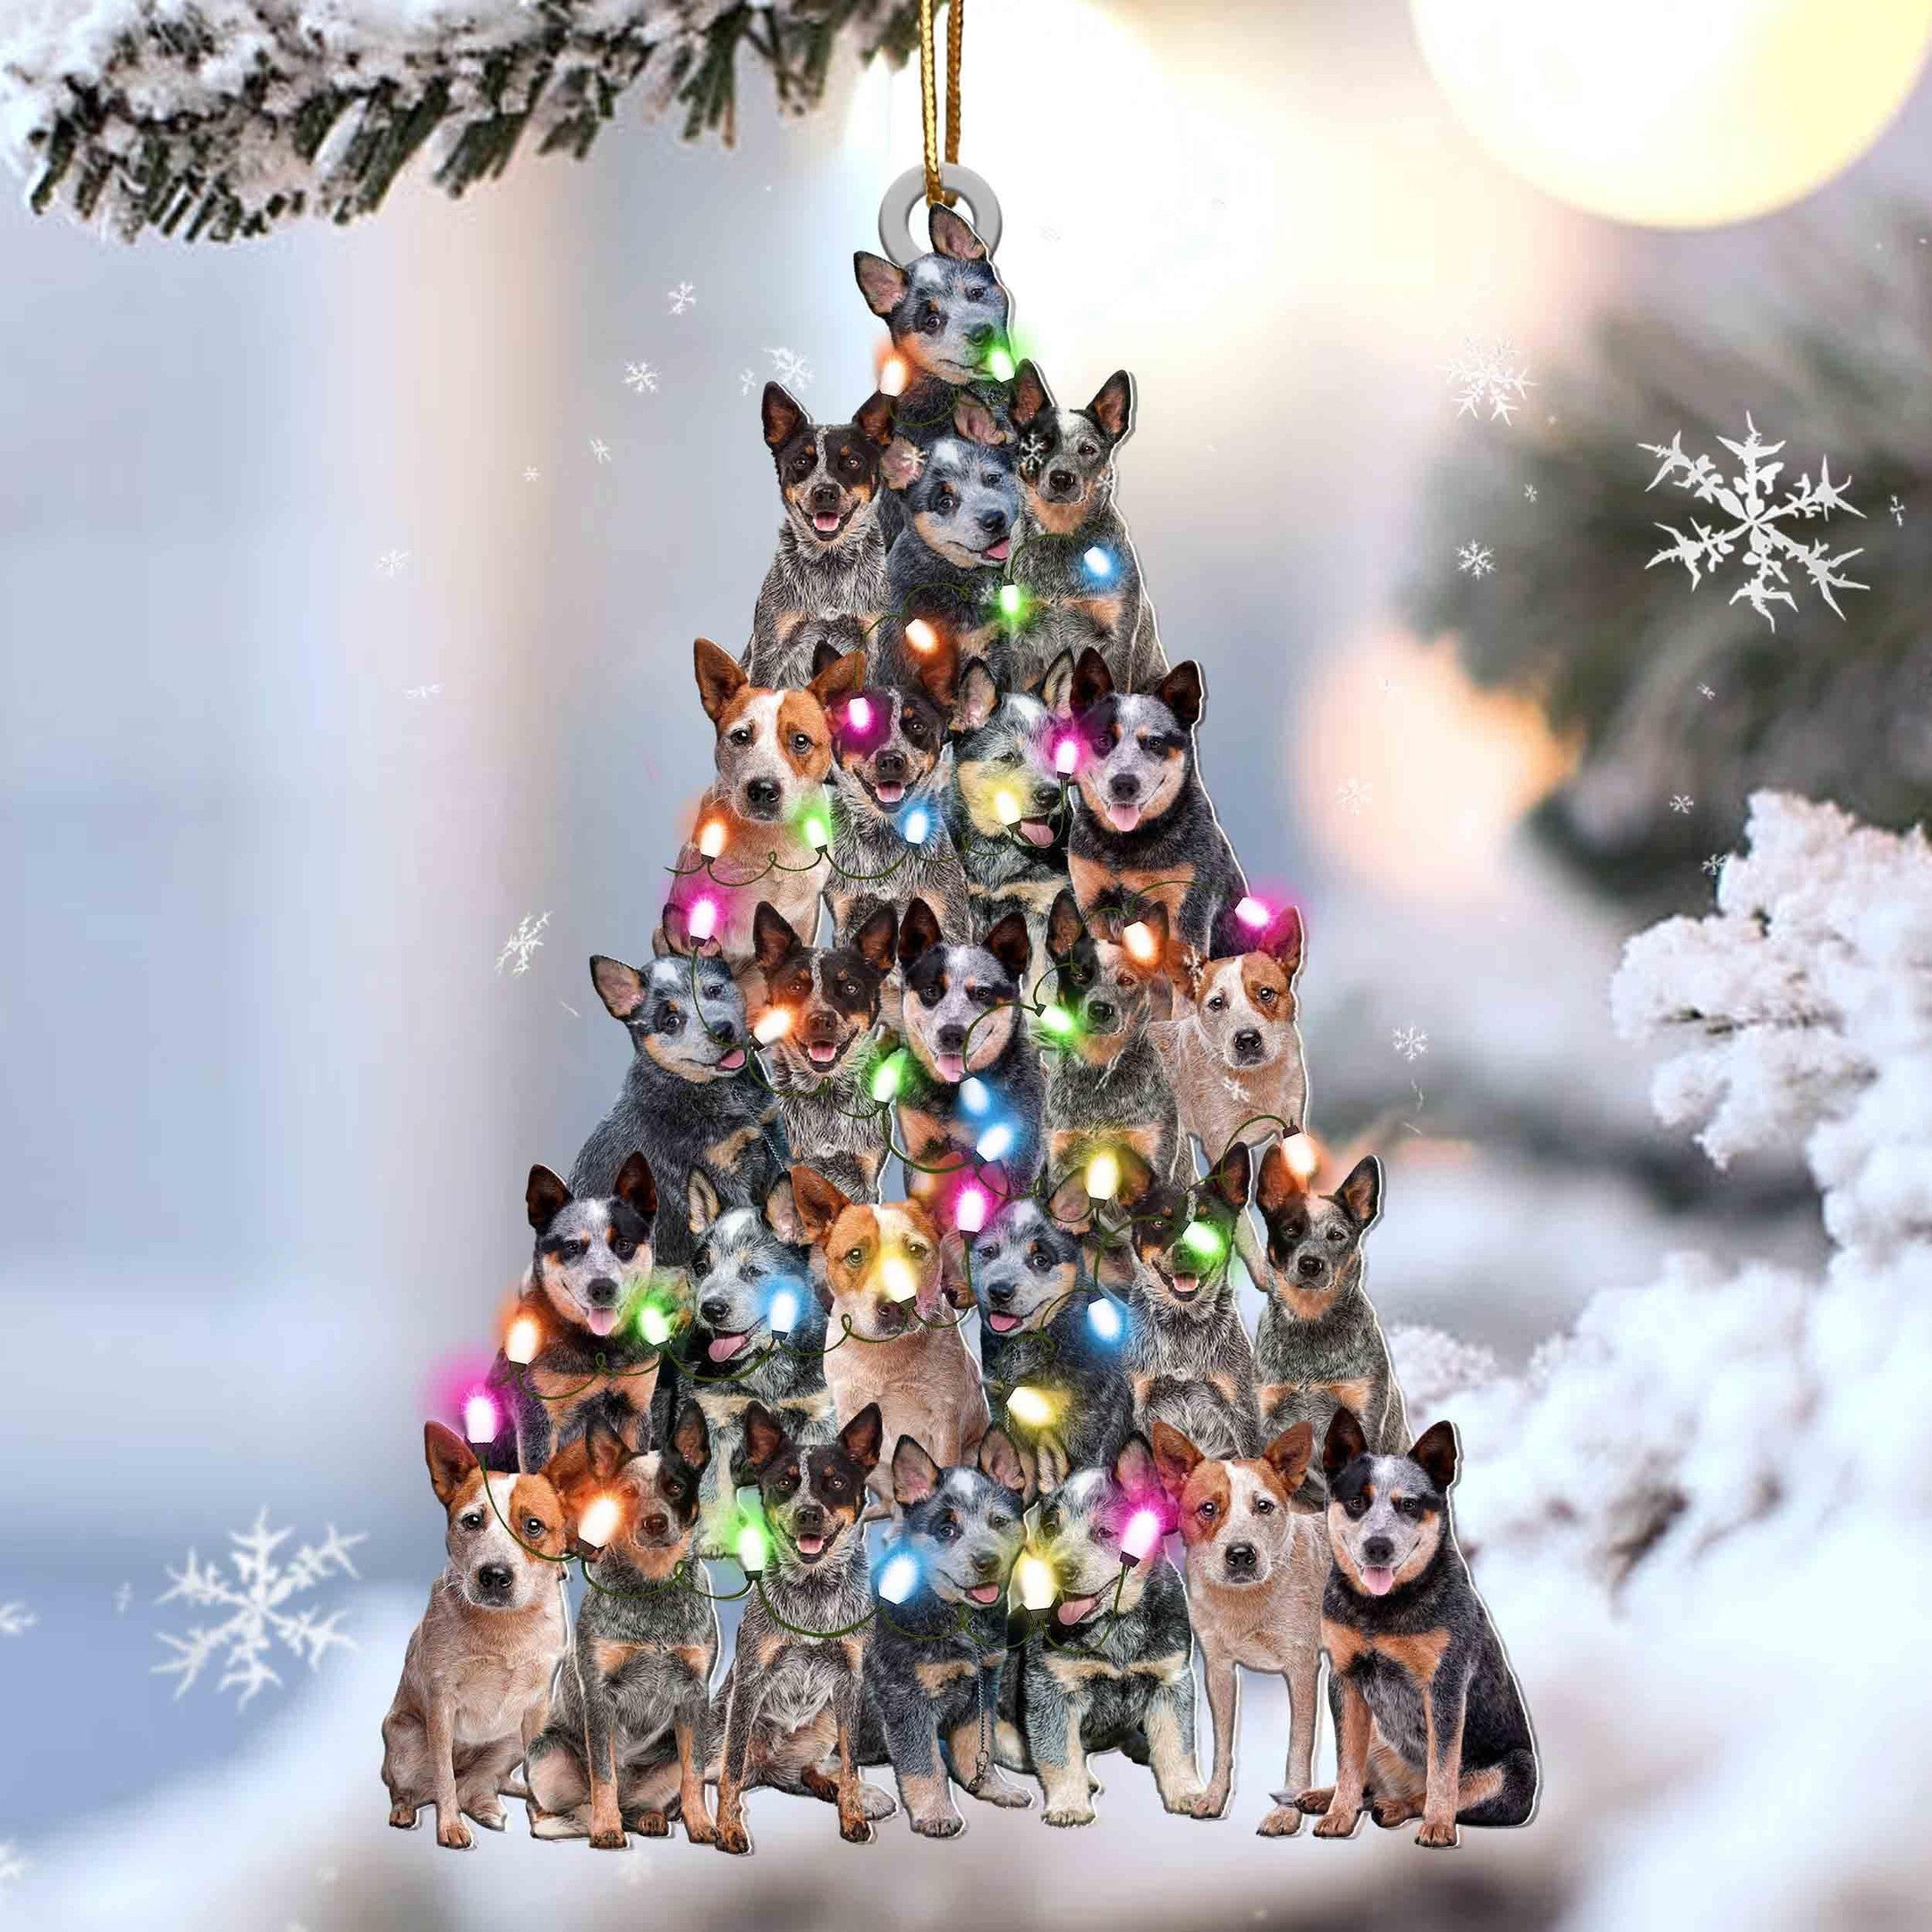 Heeler Christmas Tree Shaped Ornament For Heeler Lover Gift For Dog Lover Ornament